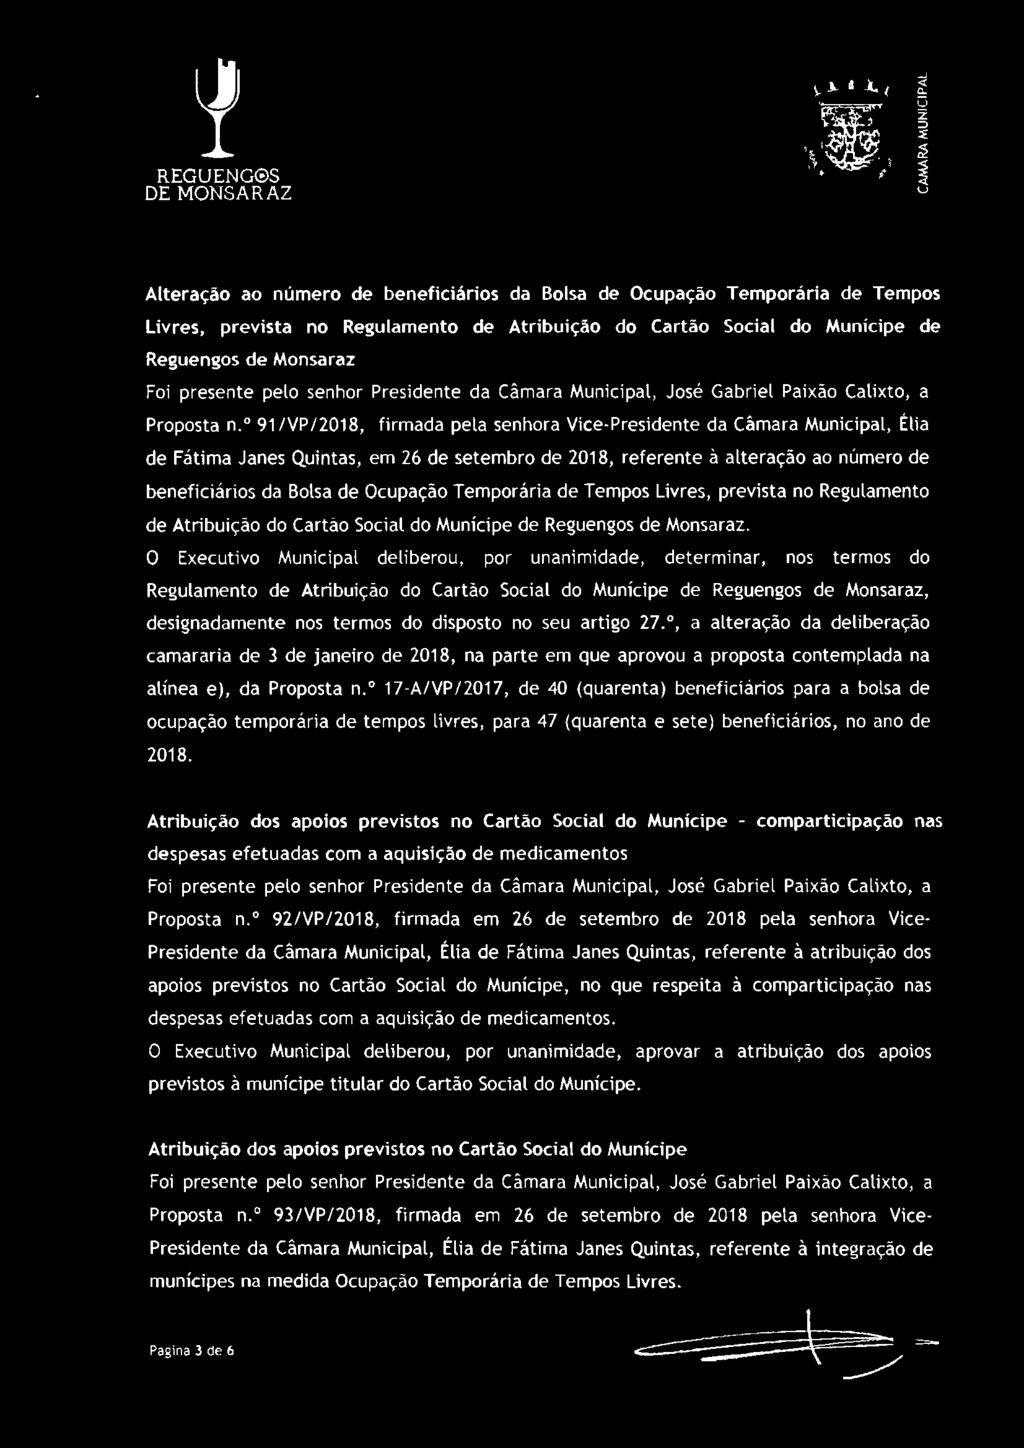 º 91 /VP/2018, firmada pela senhora Vice-Presidente da Câmara Municipal, Élia de Fátima Janes Quintas, em 26 de setembro de 2018, referente à alteração ao número de beneficiários da Bolsa de Ocupação